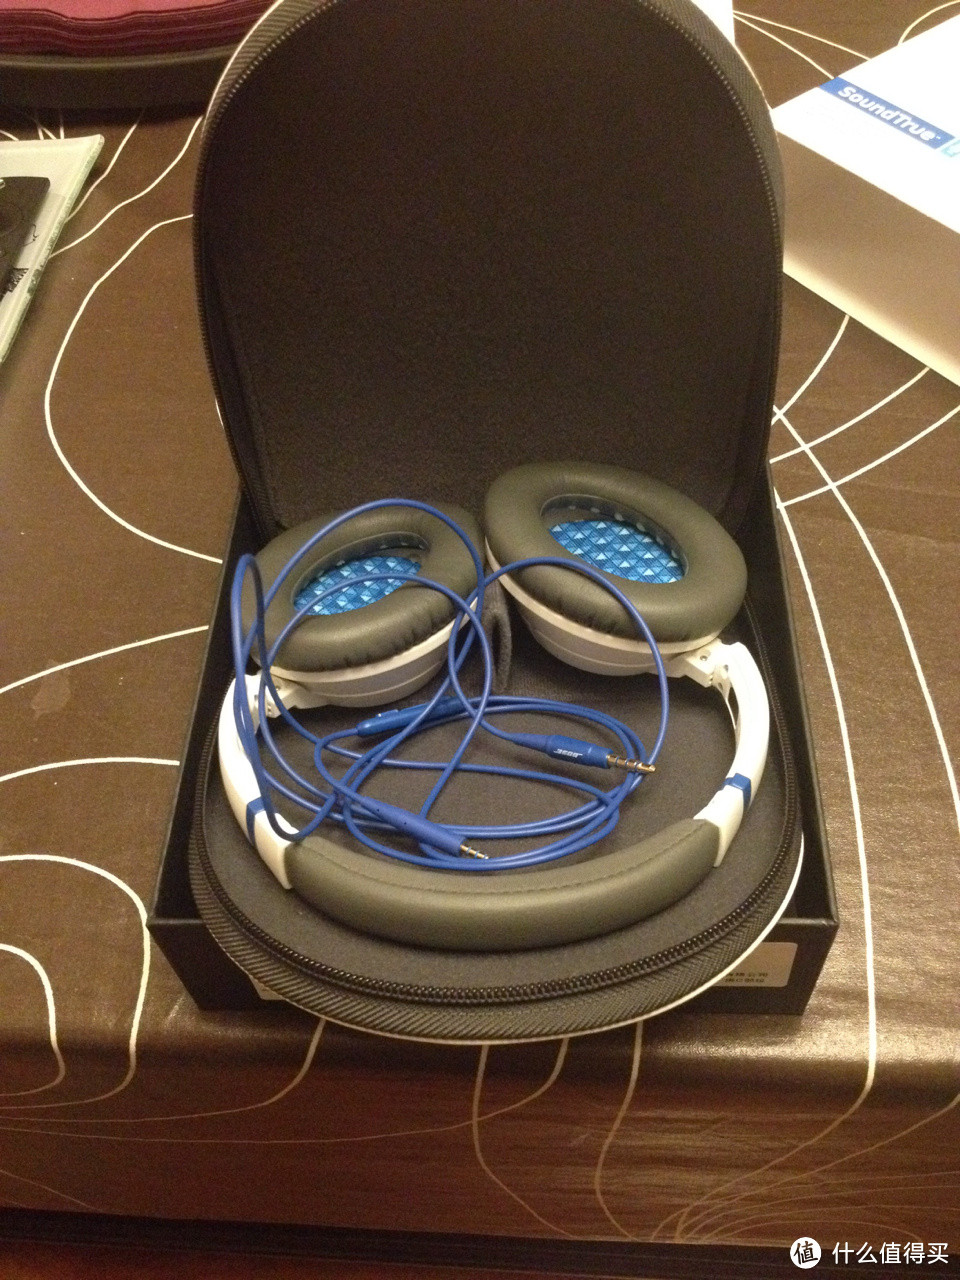 Bose 博士 SoundTrue 头戴式耳机、SoundLink Mini 蓝牙音箱